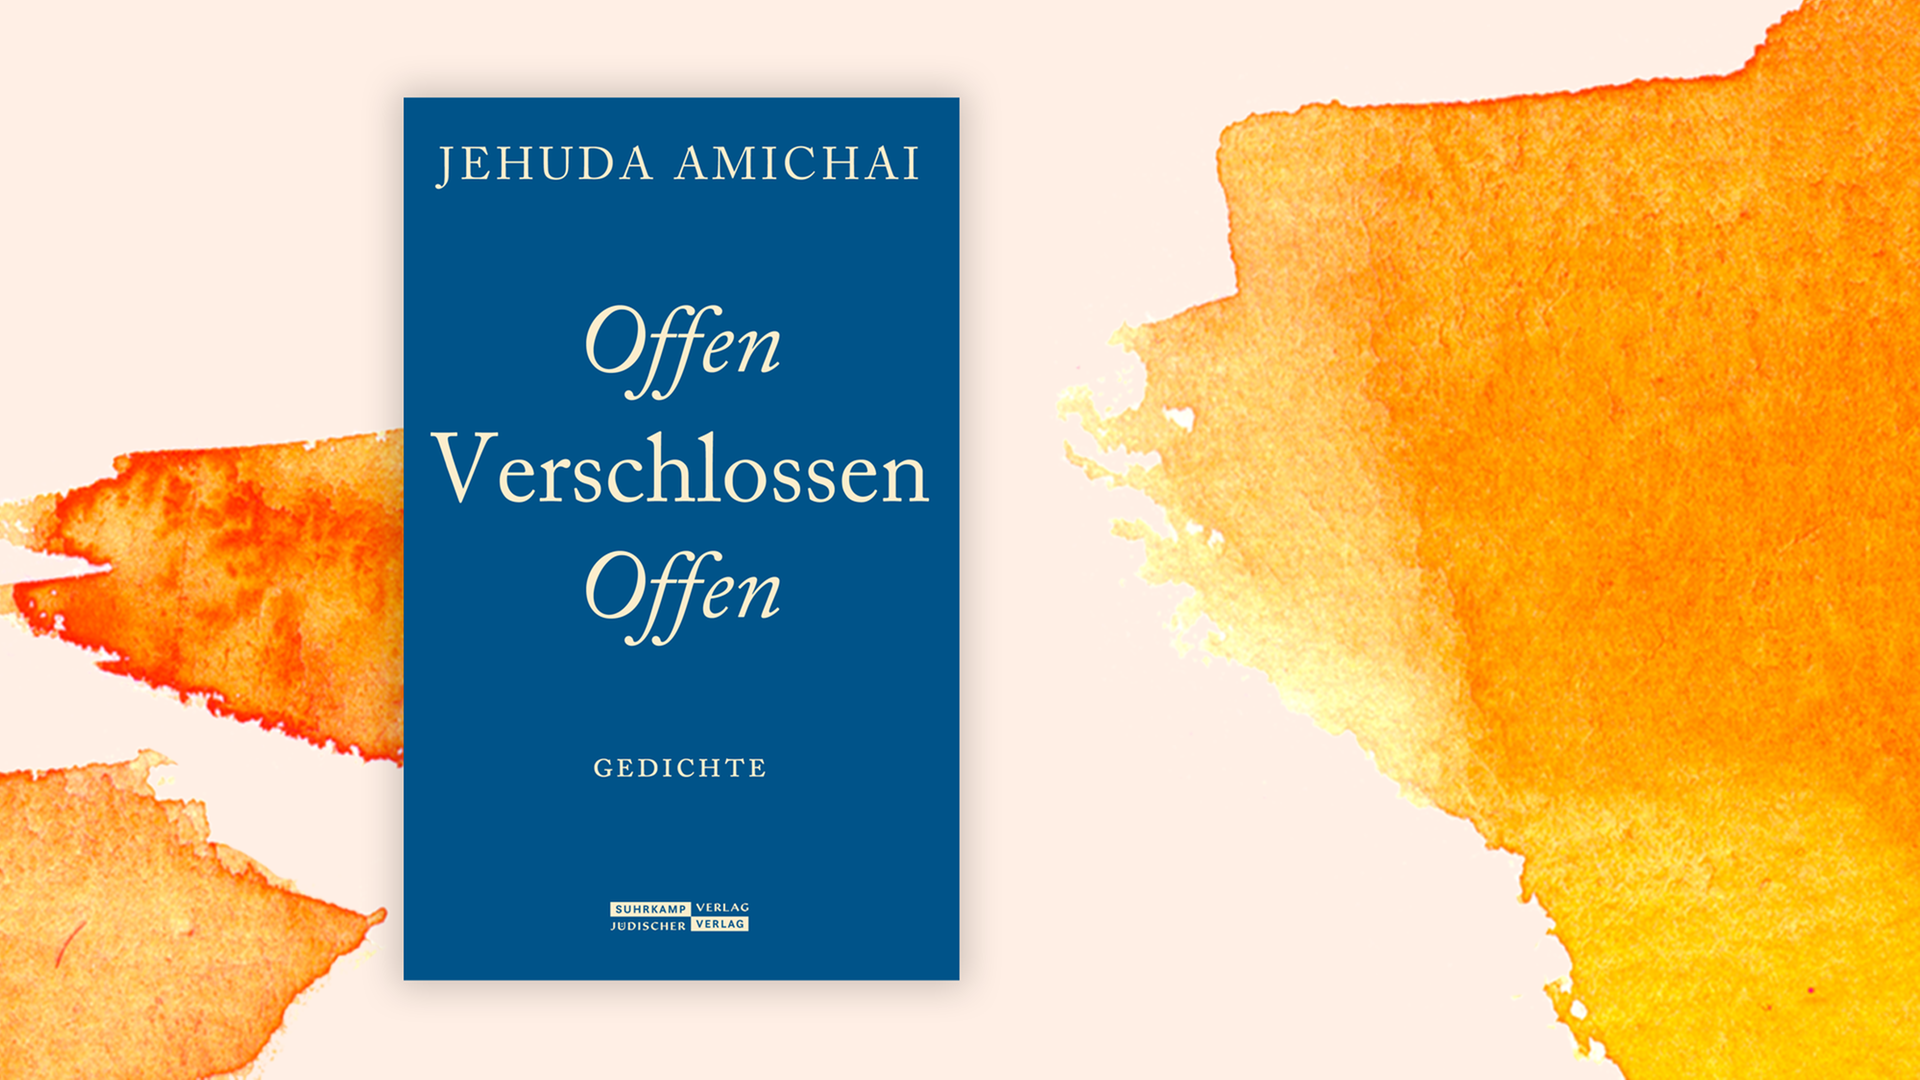 Zu sehen ist das Cover des Buches "Offen Verschlossen Offen" von Jehuda Amichai.